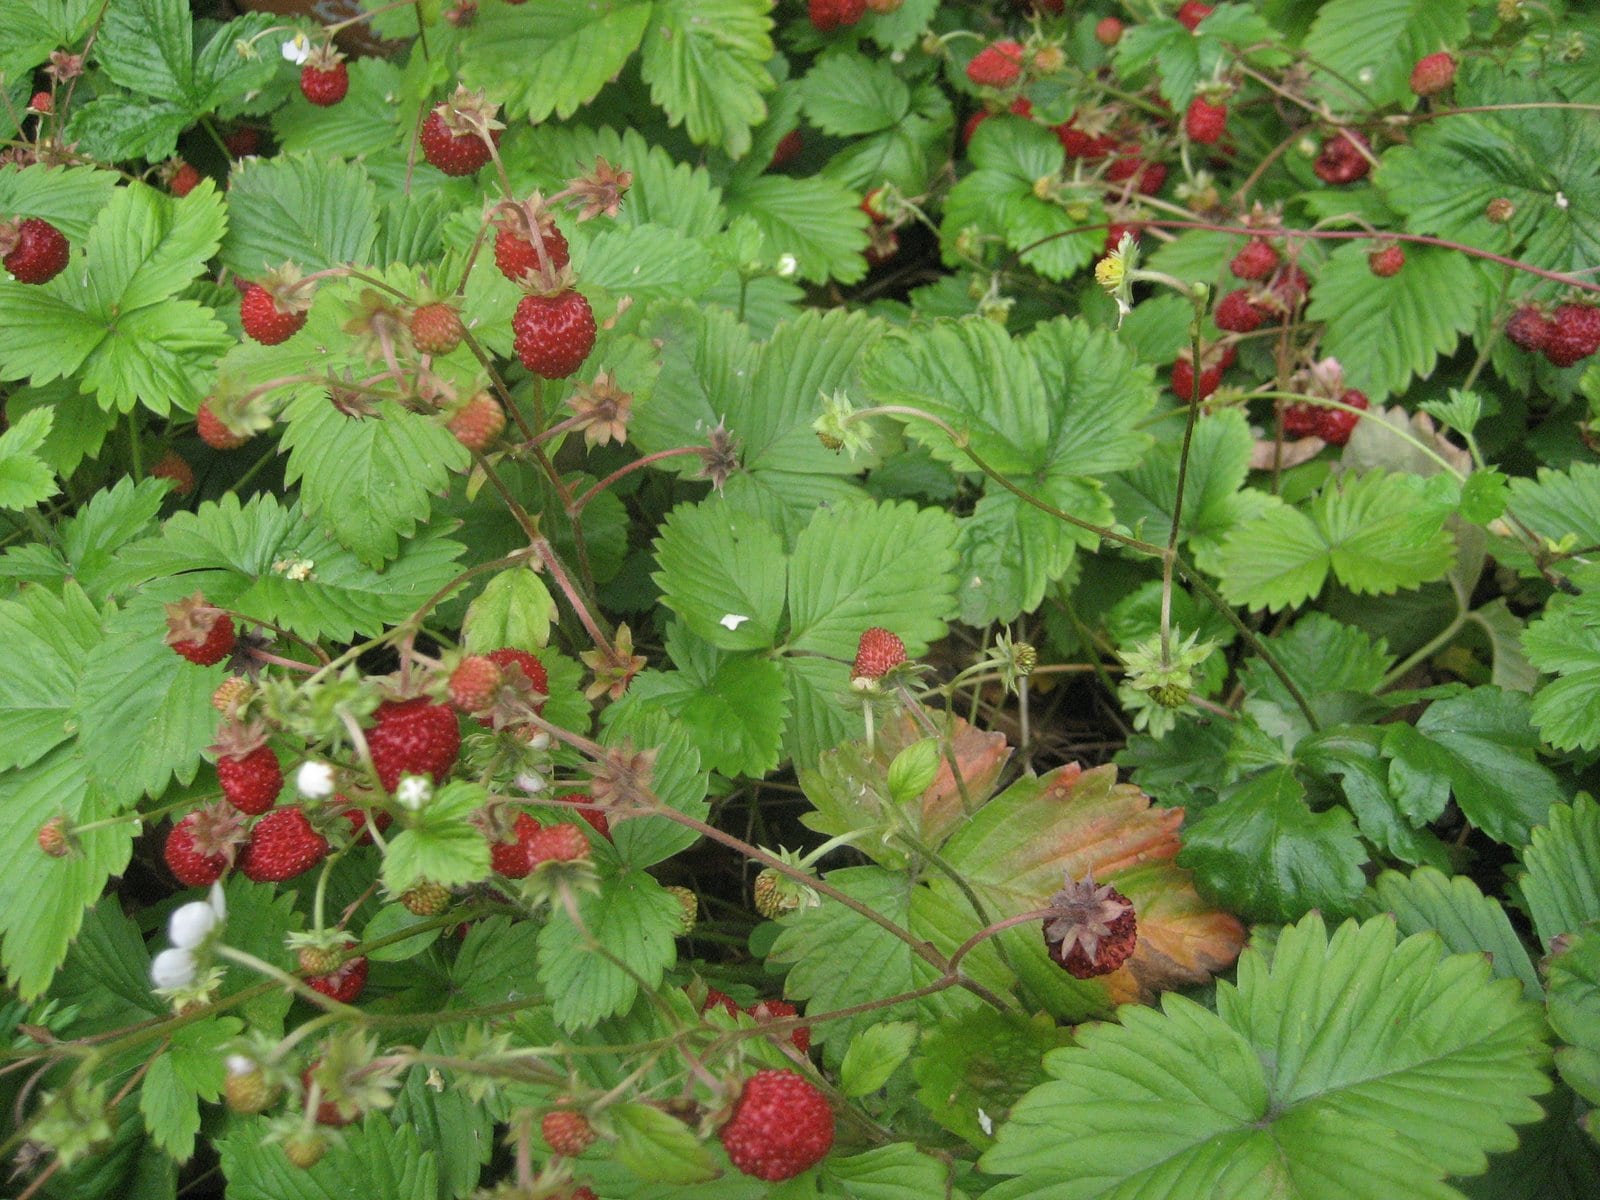 strawberry patch - Schumacher's Nursery & Berry Farm